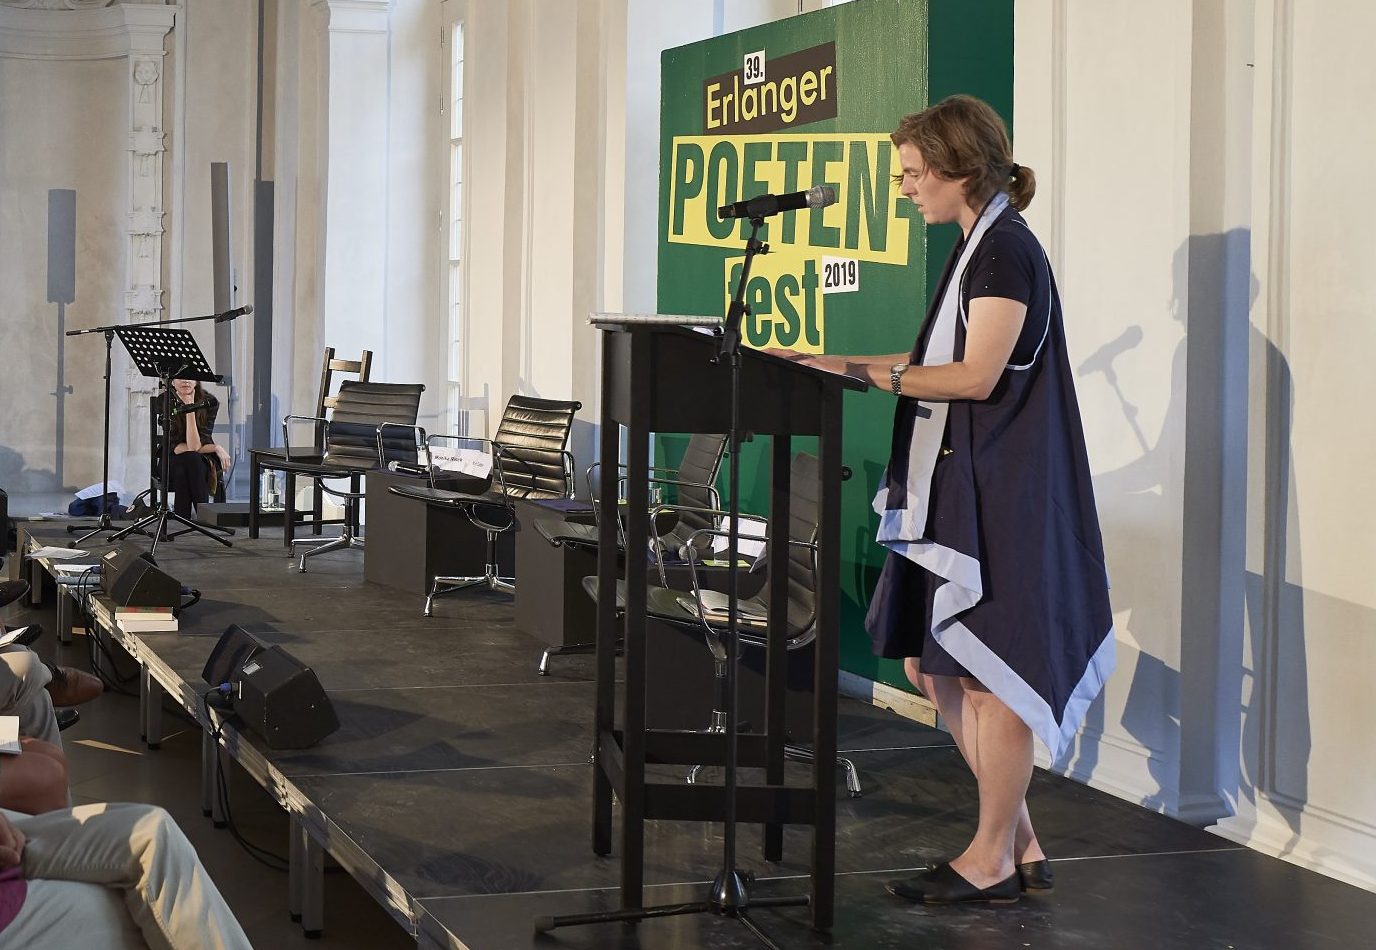 Ann Cotten auf dem Podium vor einer grünen Leinwand welche mit 'Erlanger Poetenfest 2019' beschriftet ist